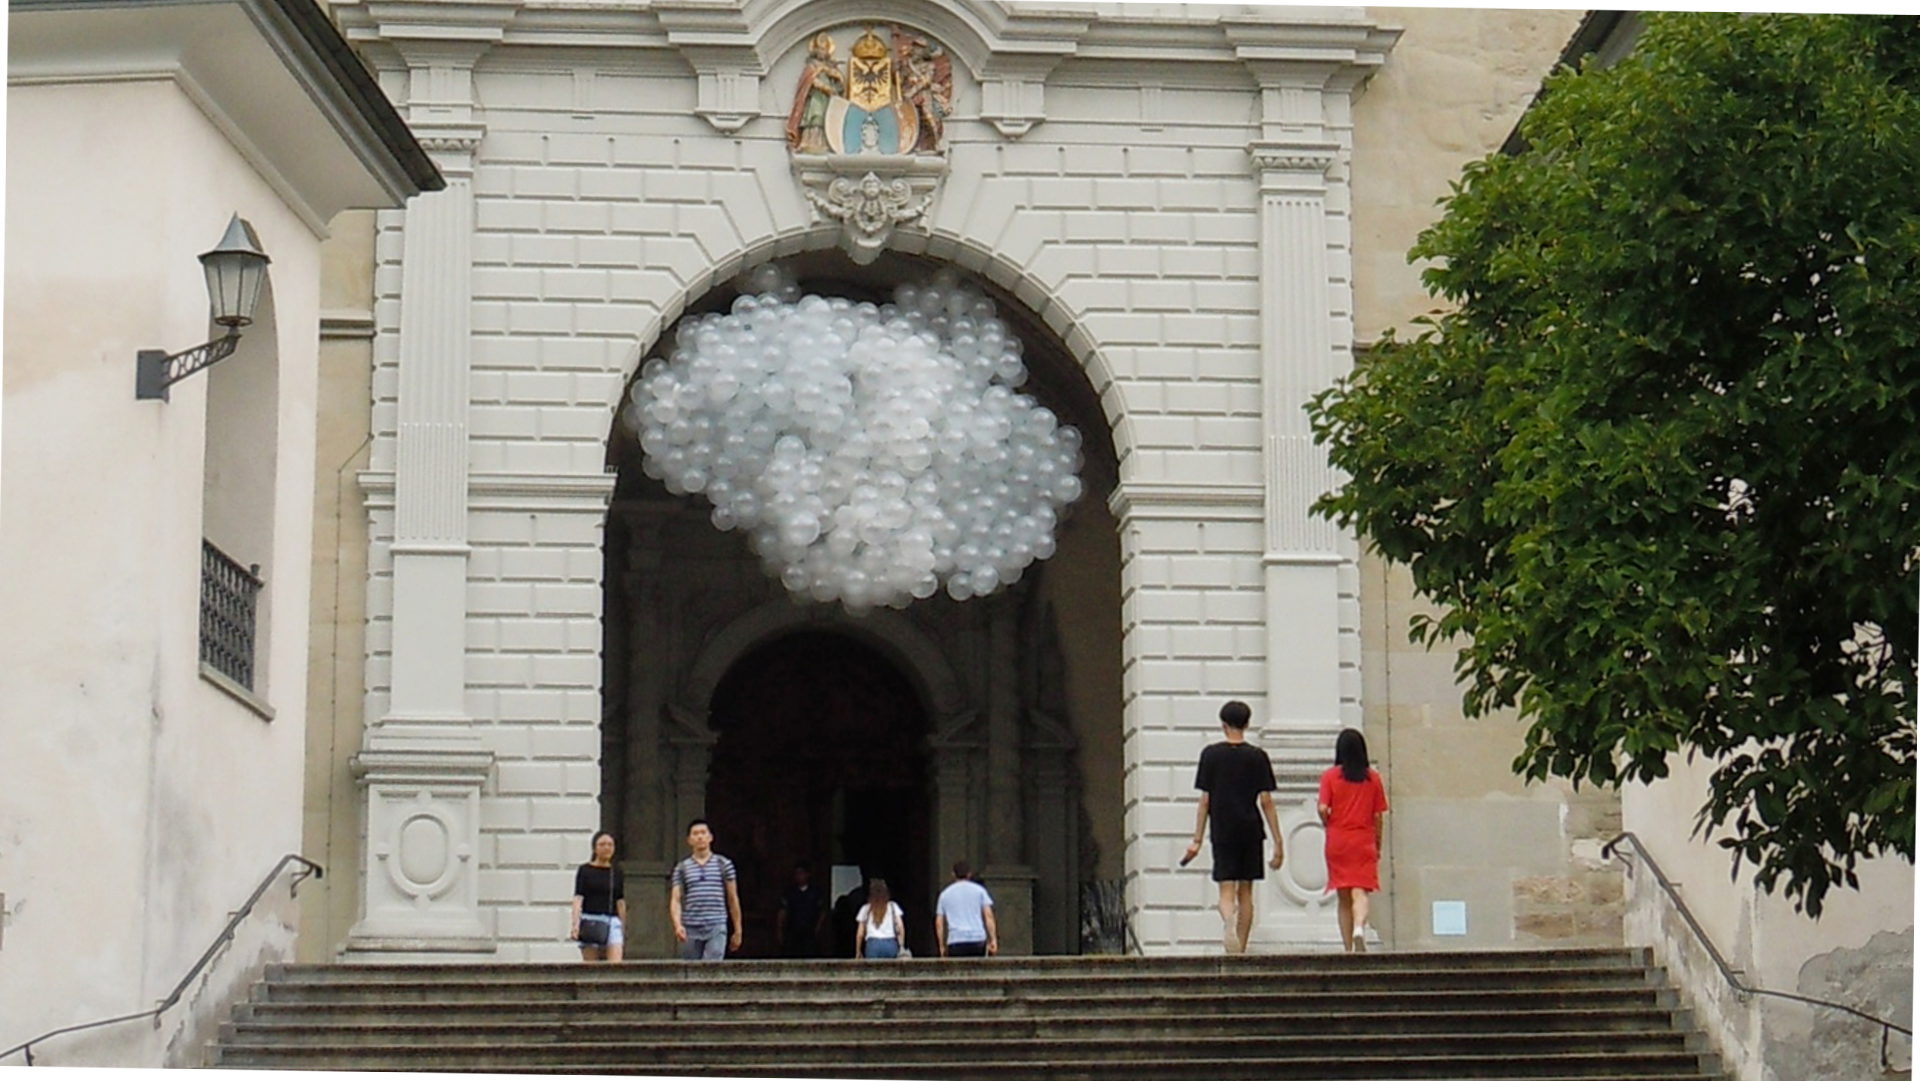 Kunstausstellung "Atemwolken" am Portal der Luzerner Hofkirche